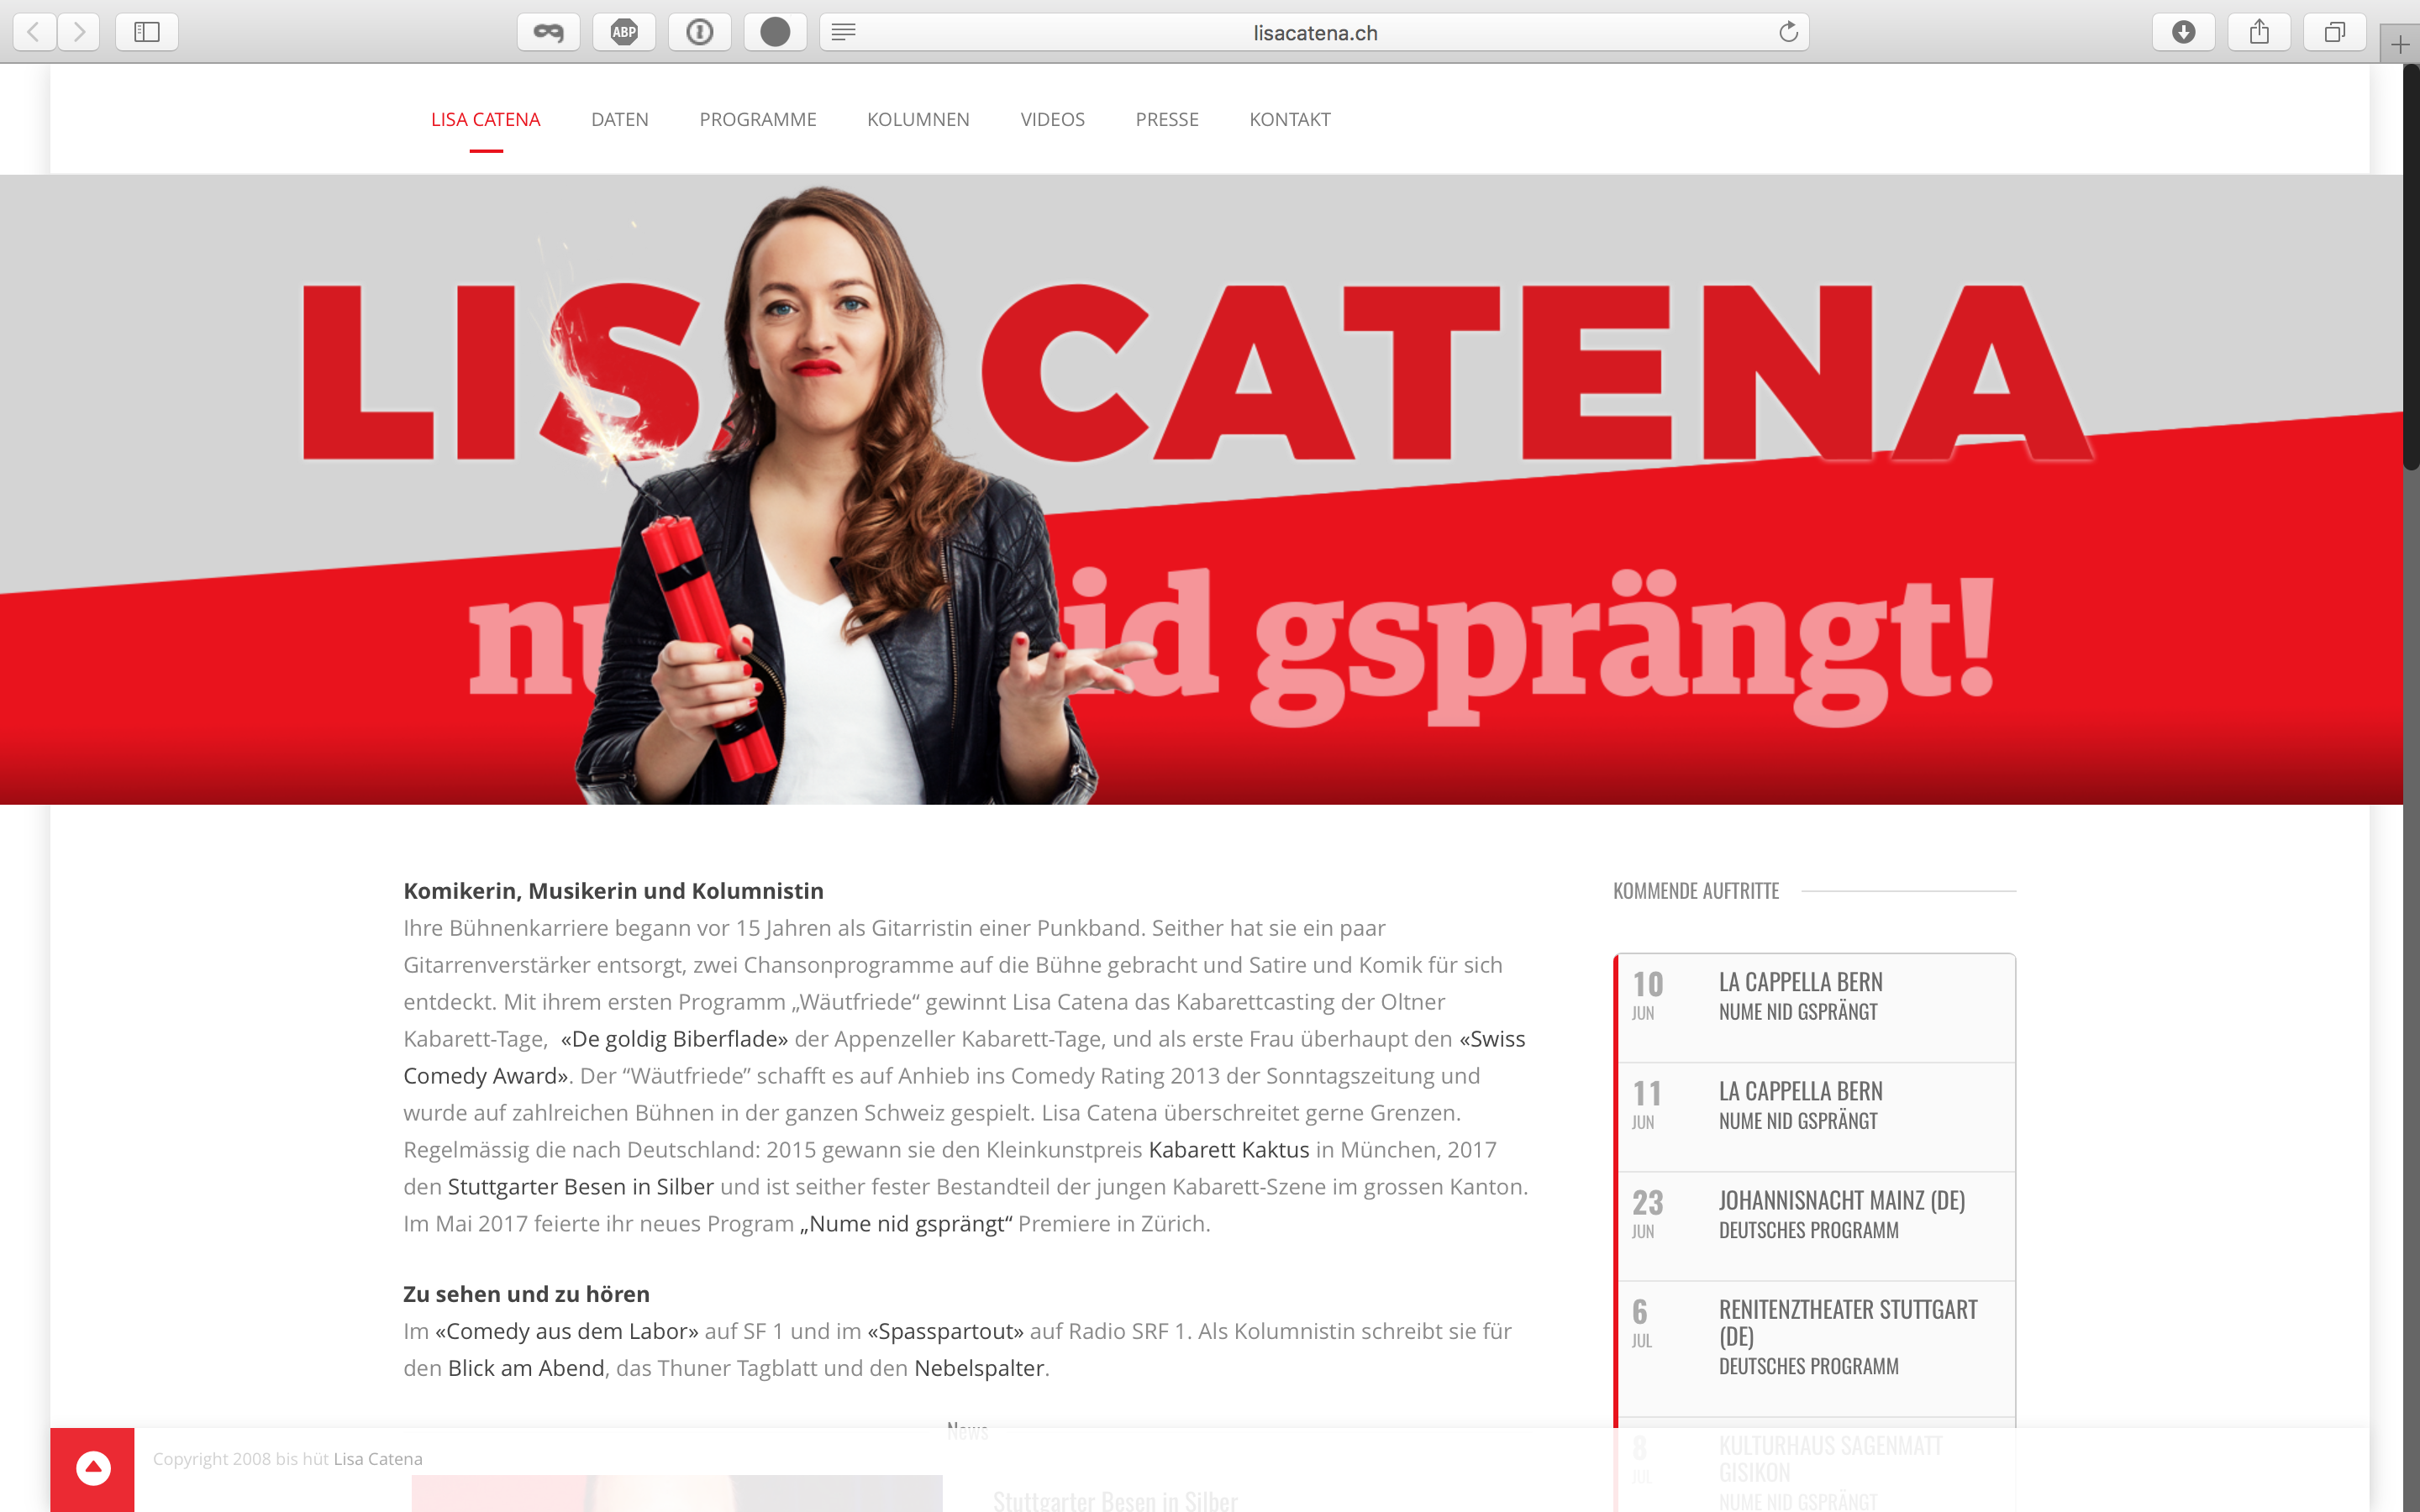 lisacatena.ch – Anpassungen ans neue Programm